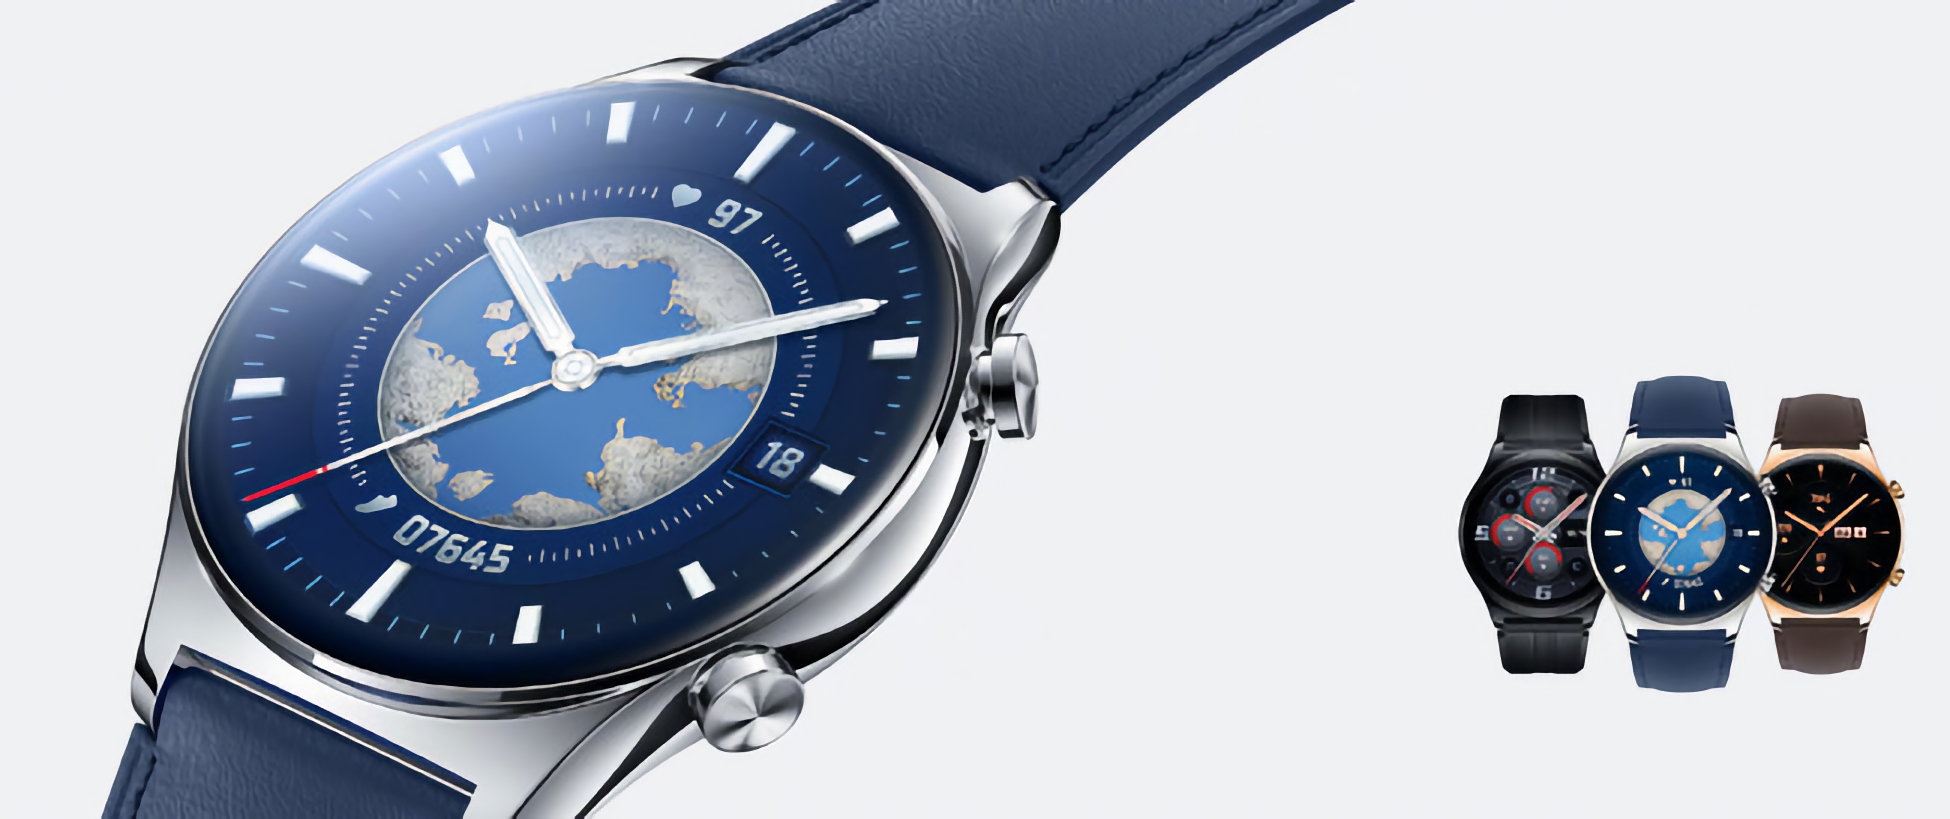 Honor ujawnia smartwatch Watch GS3 z zaawansowanym czujnikiem tętna